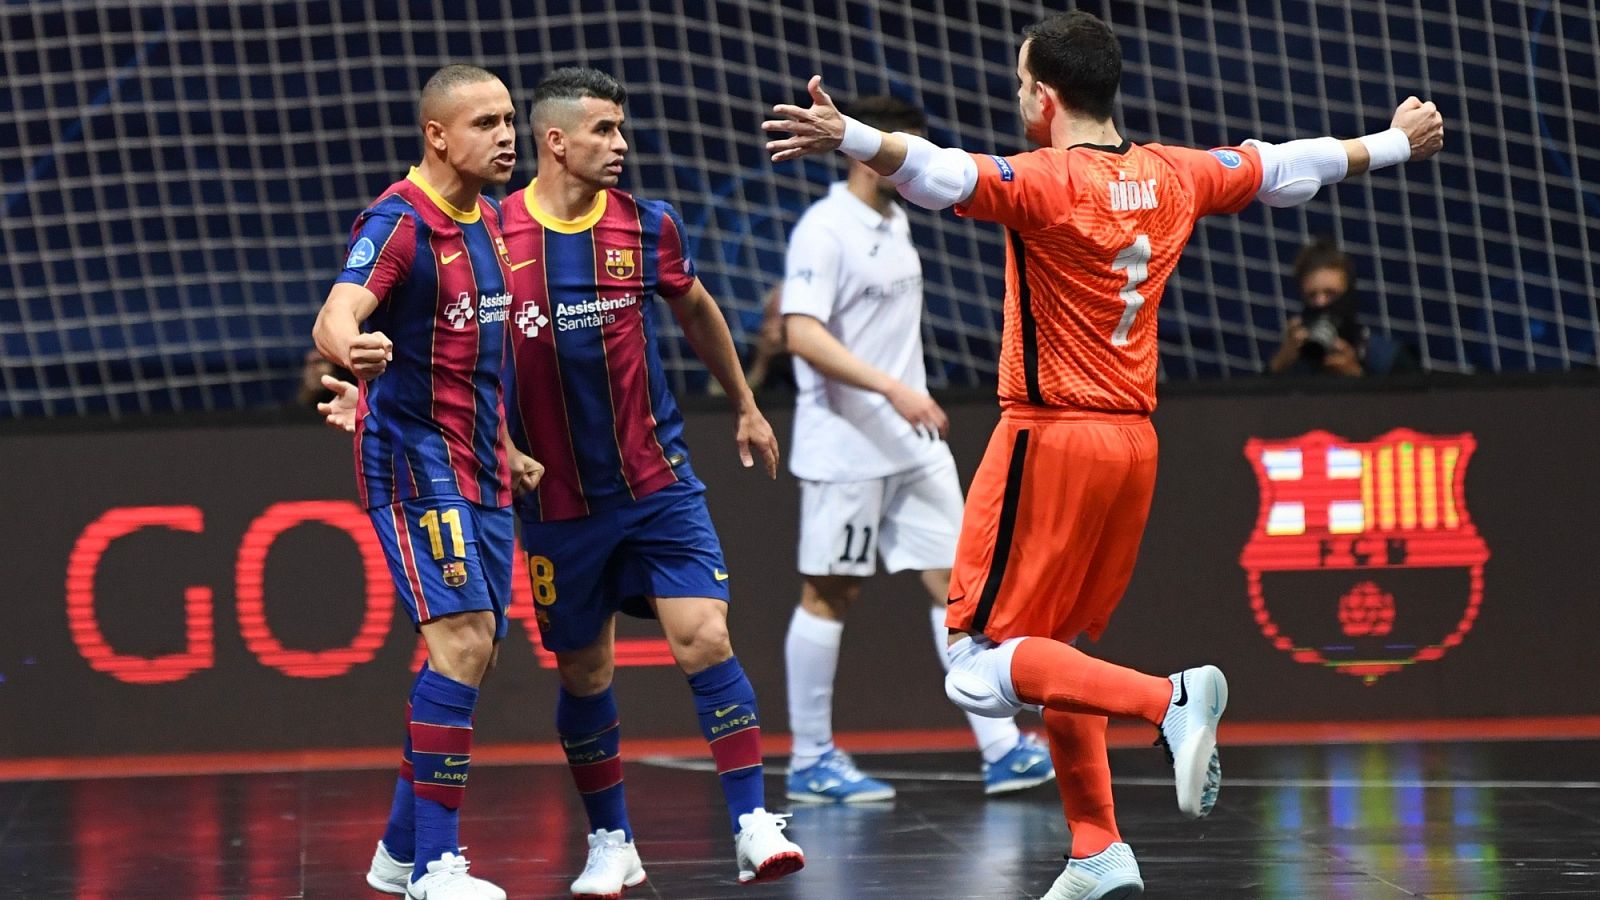 El FC Barcelona de fúbol sala se clasifica para la final de la Liga de Campeones